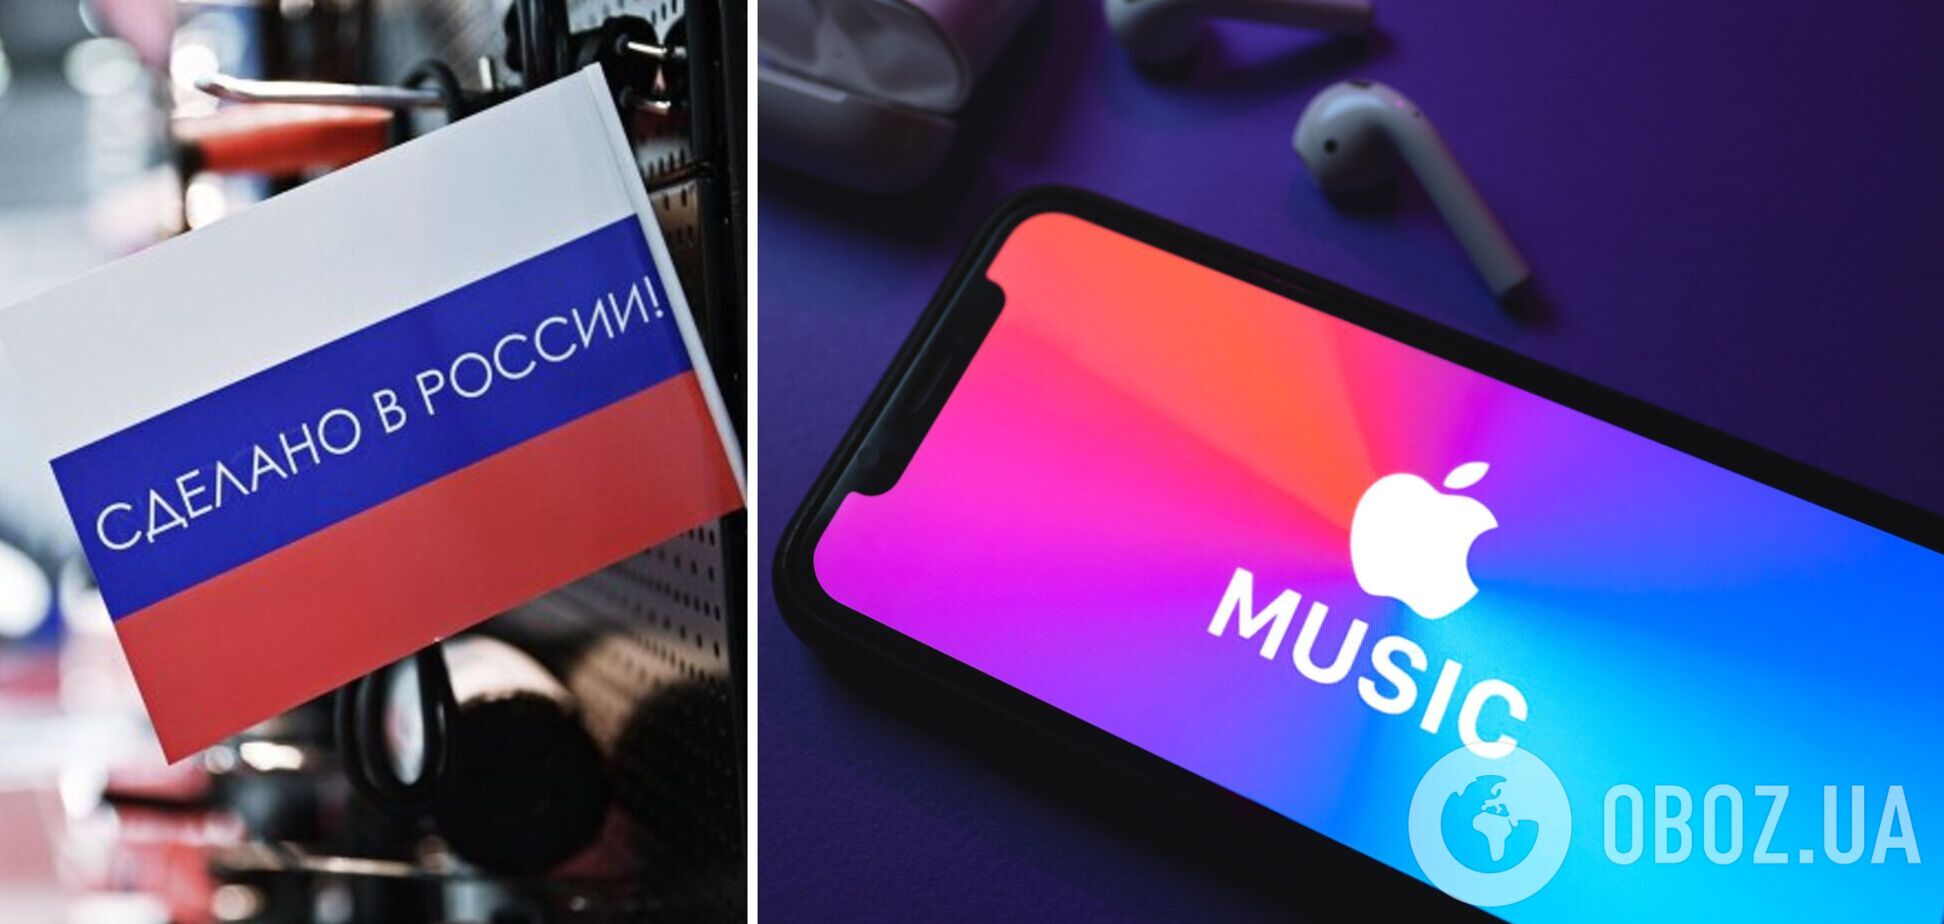 Кожна четверта пісня в топ-100 Україна – російська: мережу обурив рейтинг Apple Music